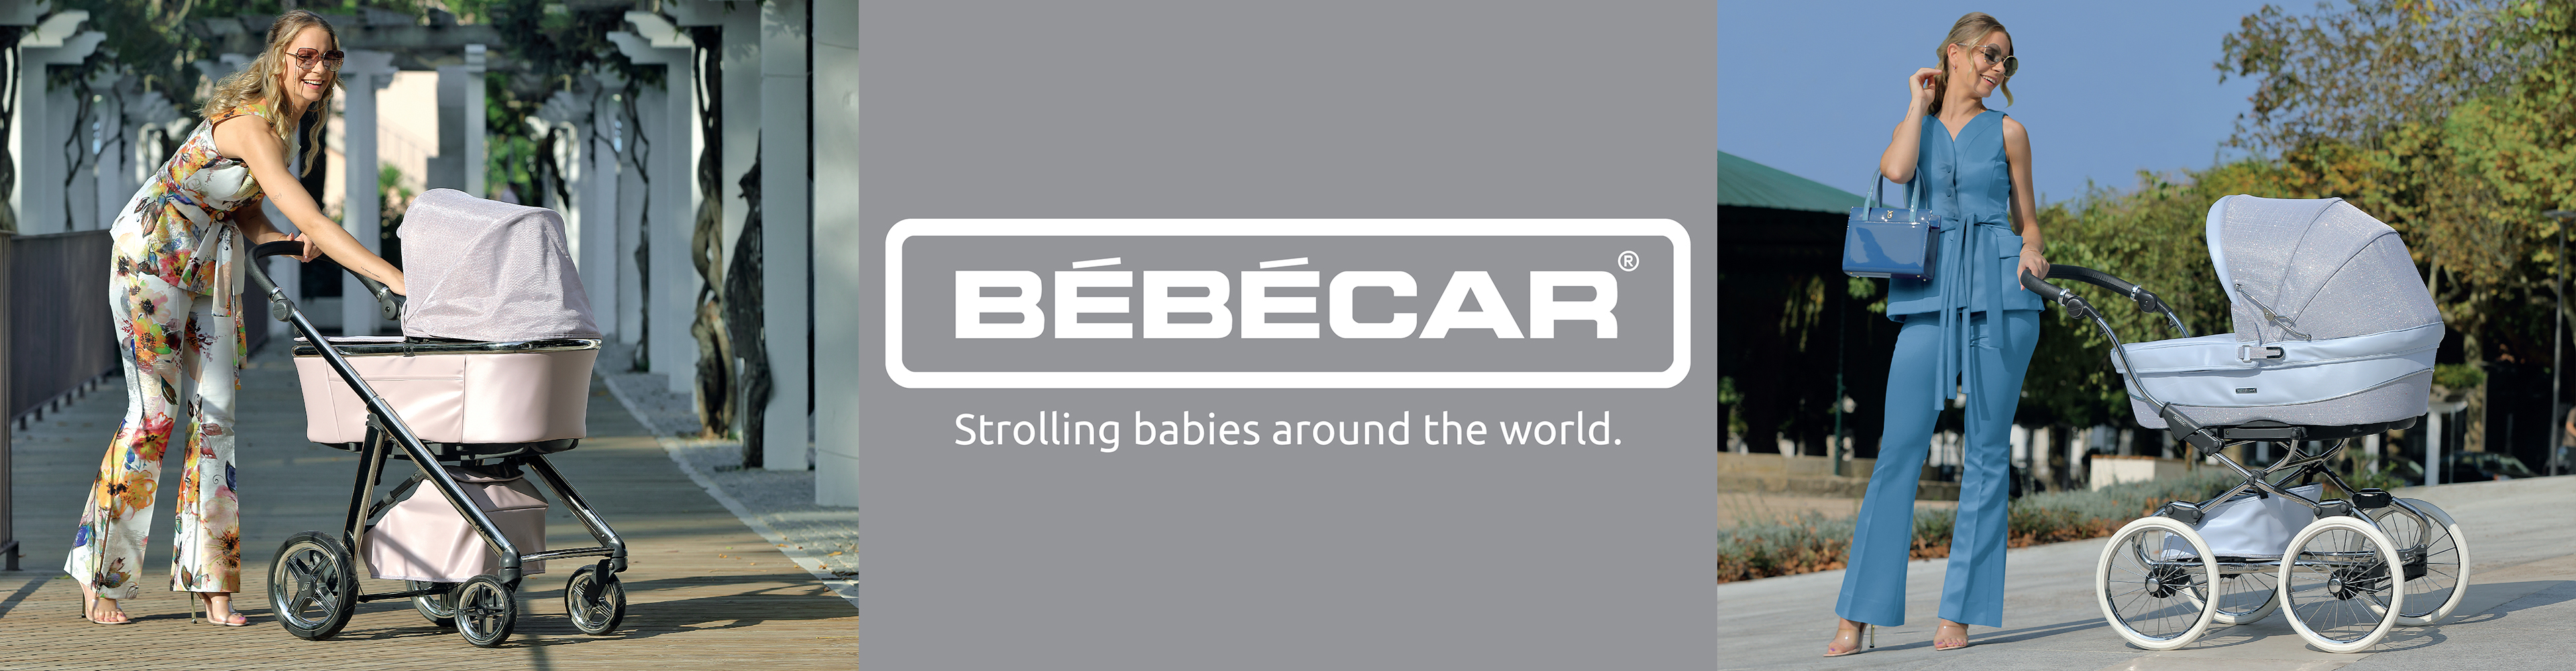 BebeCar Banner